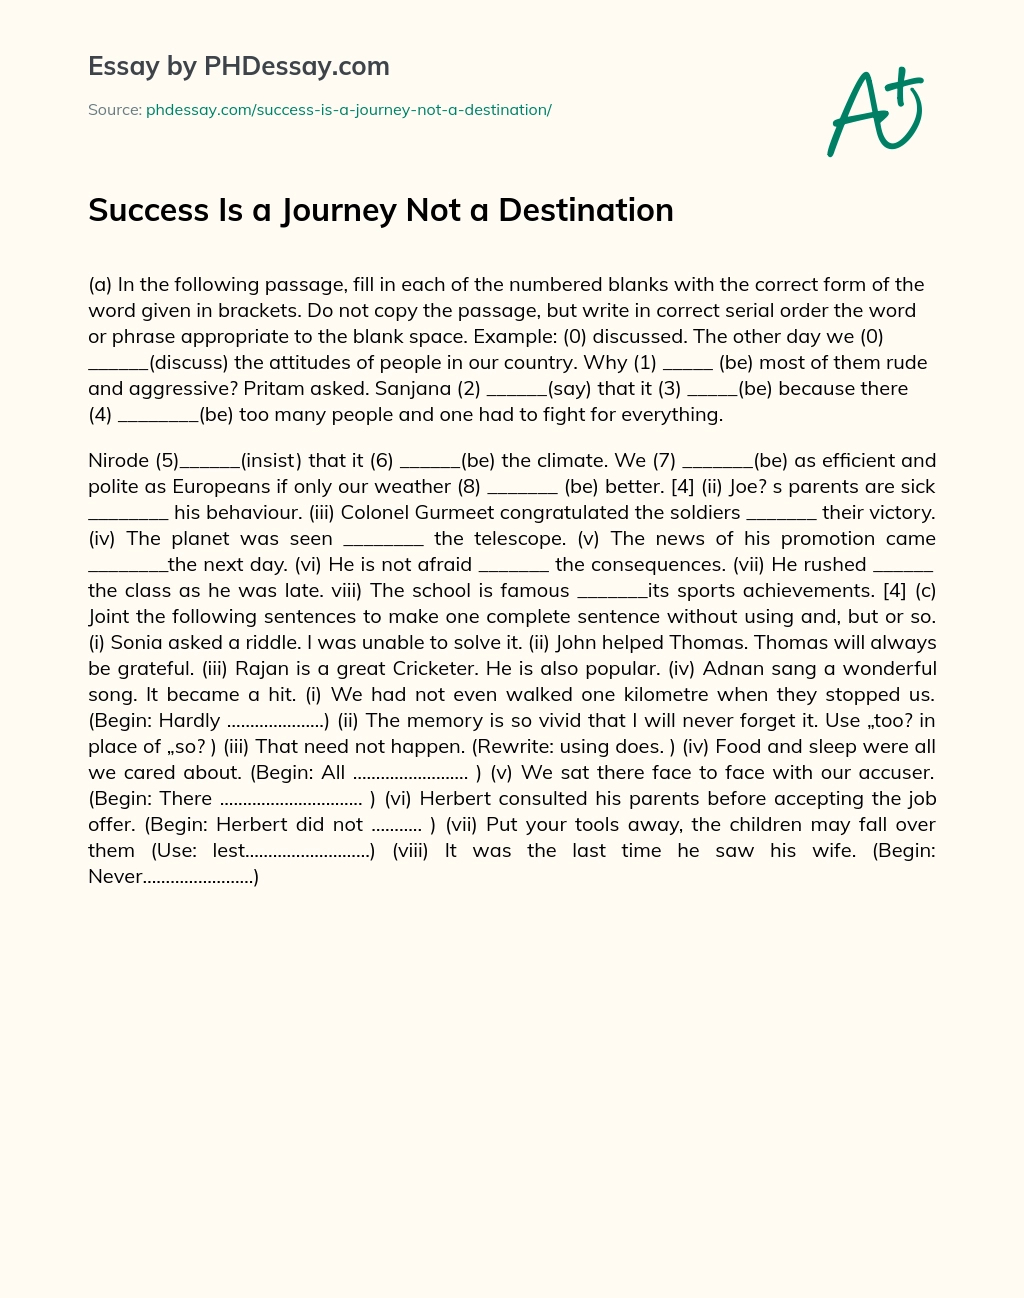 Success Is a Journey Not a Destination essay